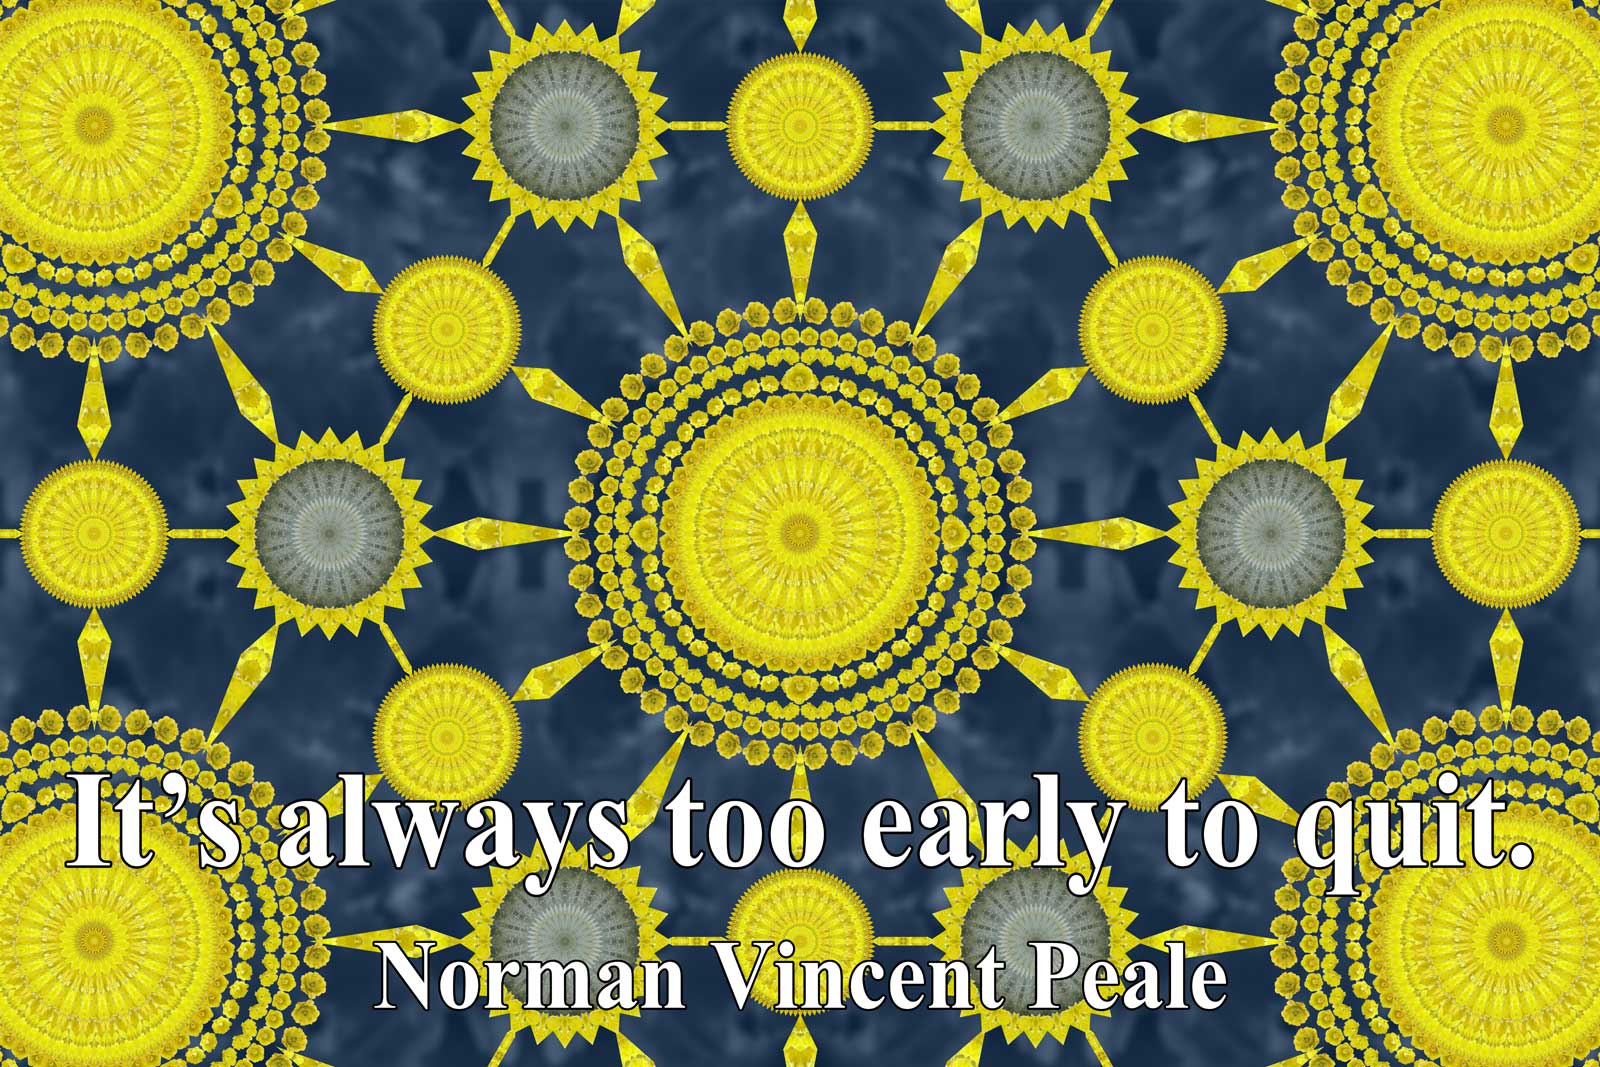 Norman Vincent Peale's quote #4